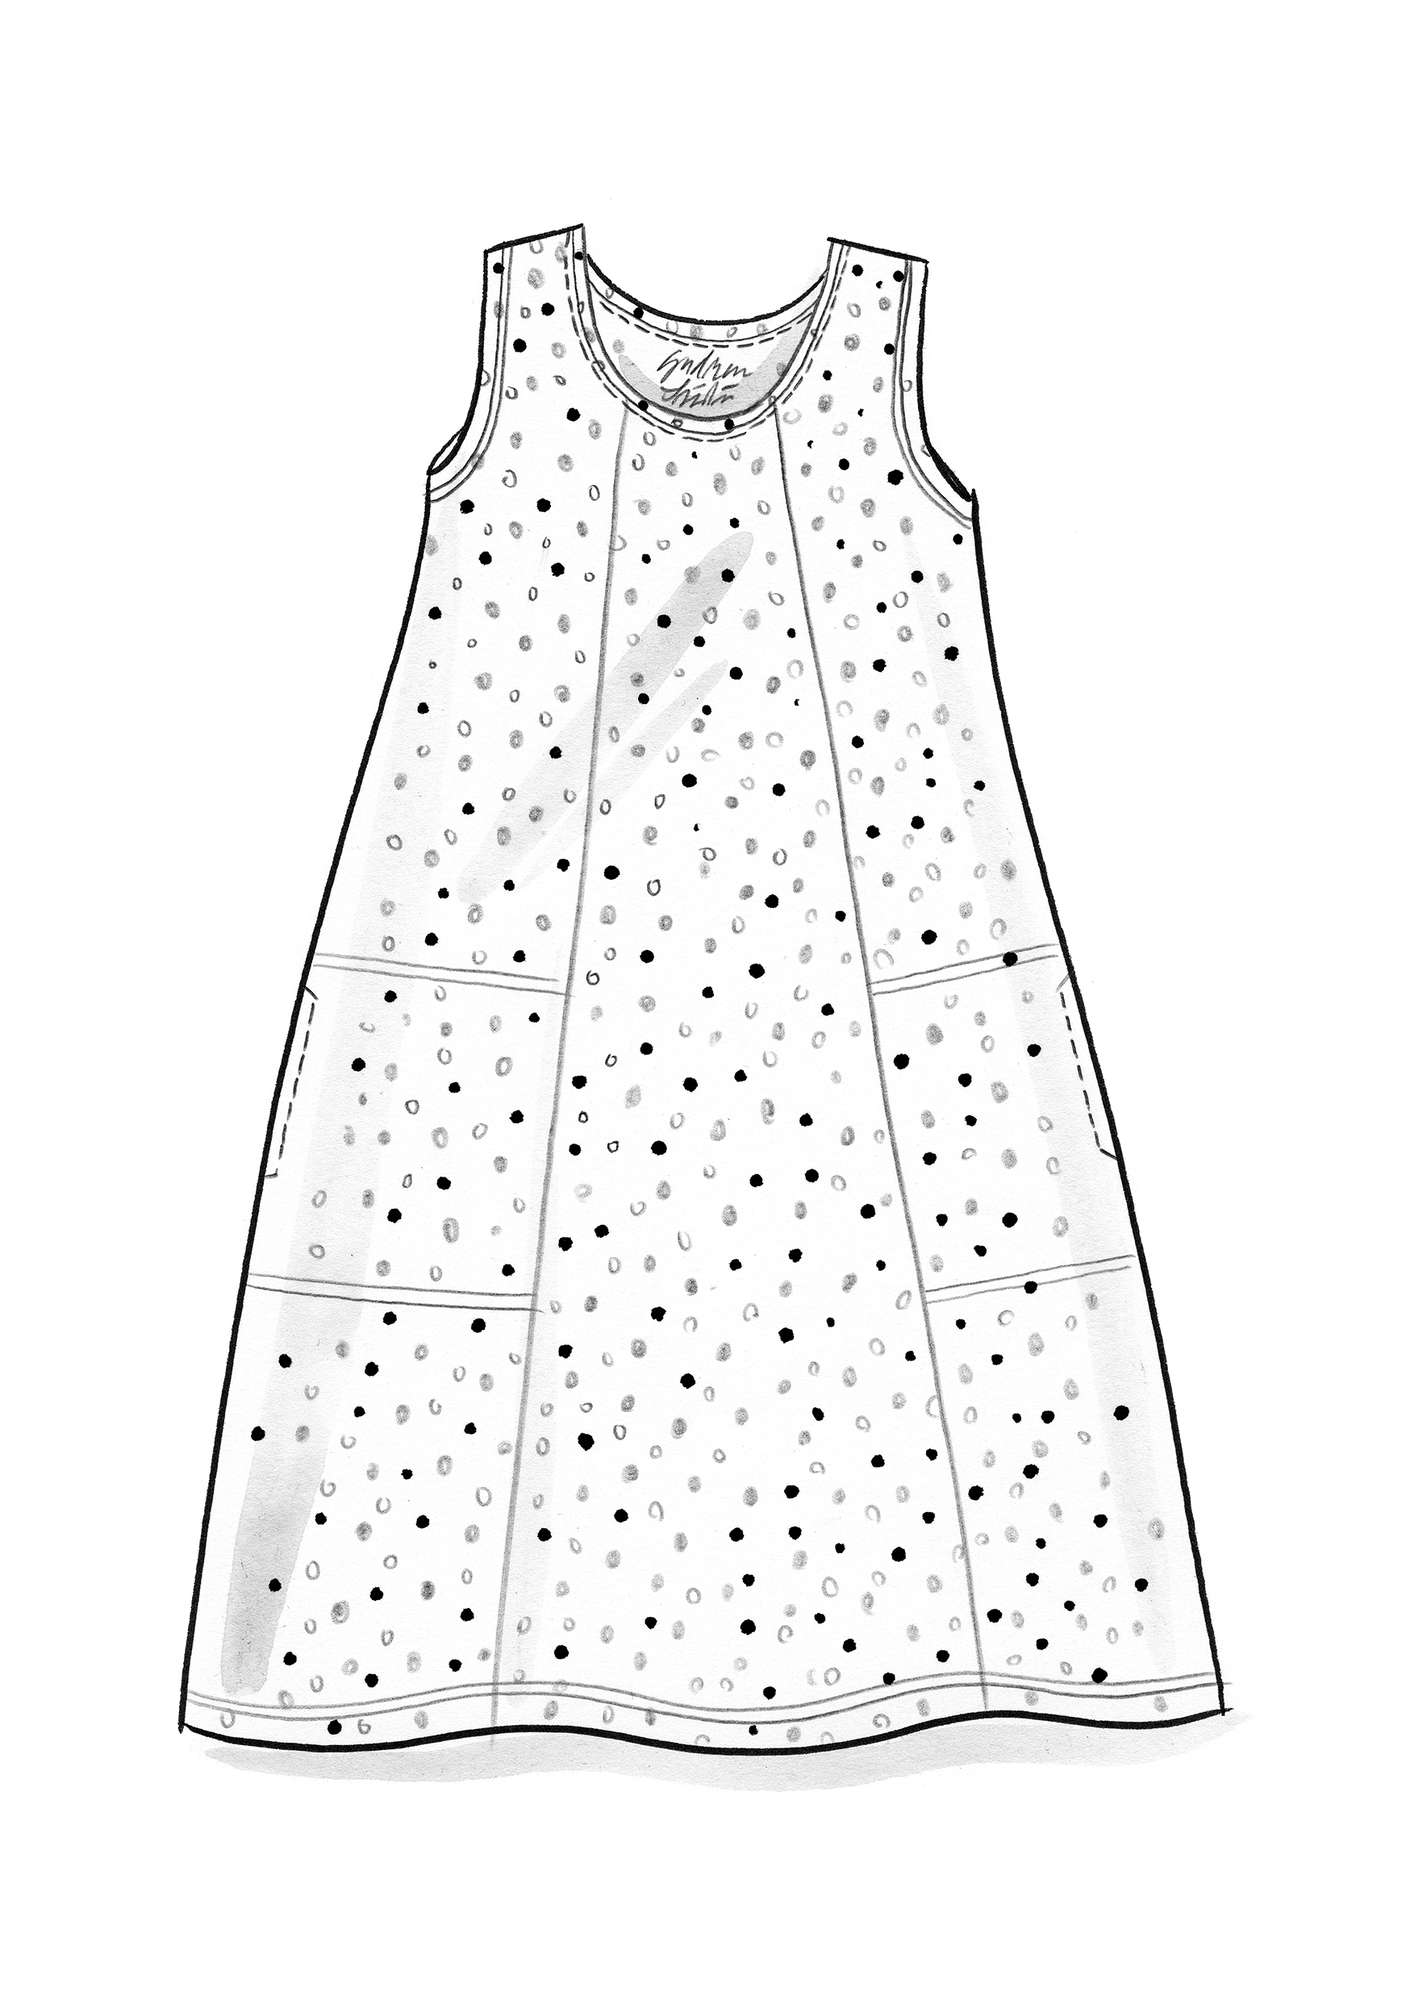 Trikåklänning  Iliana  i ekologisk bomull/elastan oliv/mönstrad